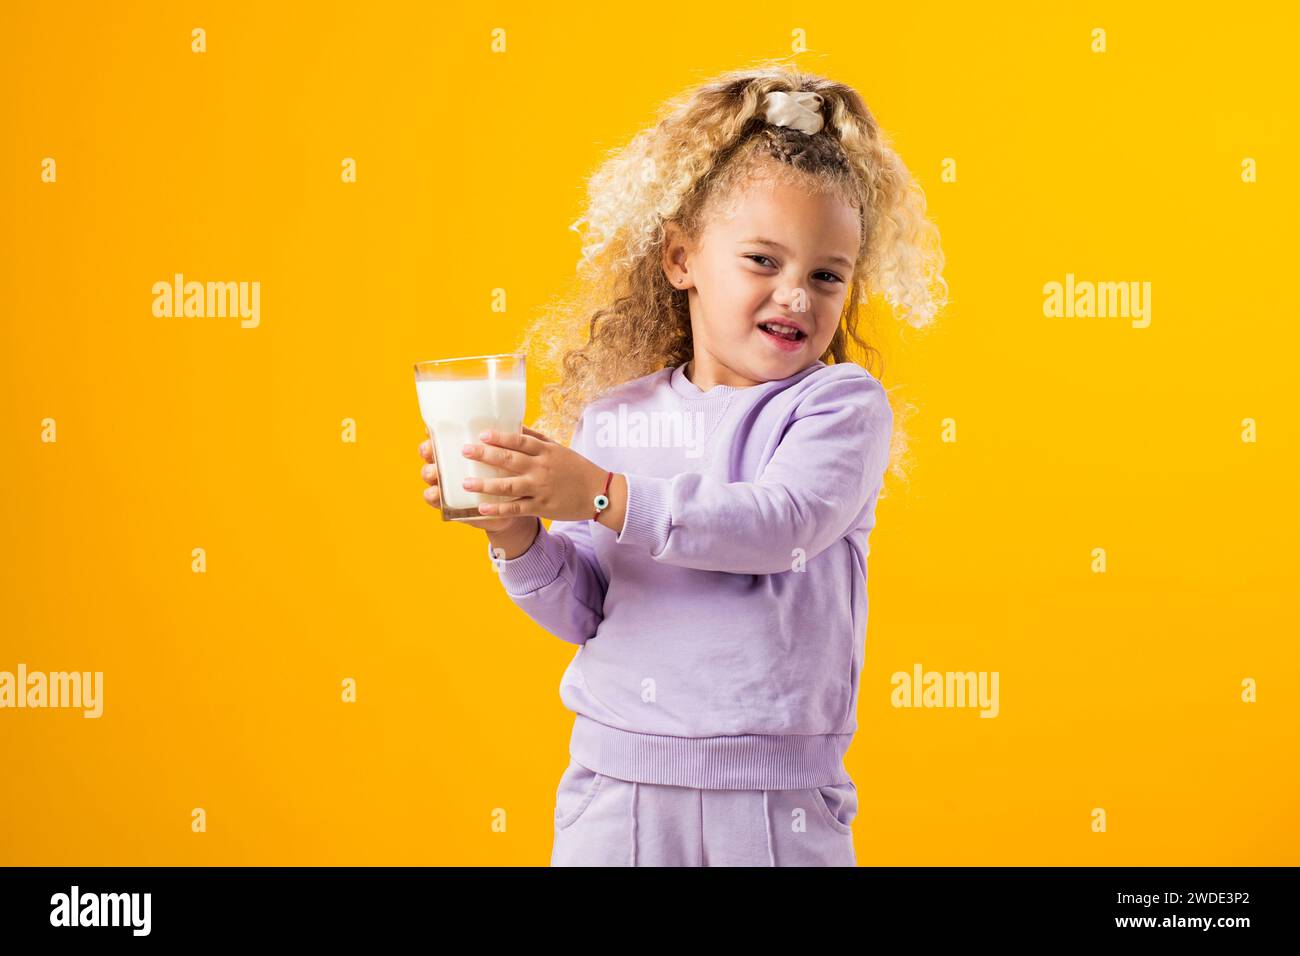 Fastidio da latte: Ragazza espressiva che regge un bicchiere di latte, che illustra l'intolleranza al lattosio e l'importanza dell'assistenza sanitaria. Espressione sgradevole r Foto Stock